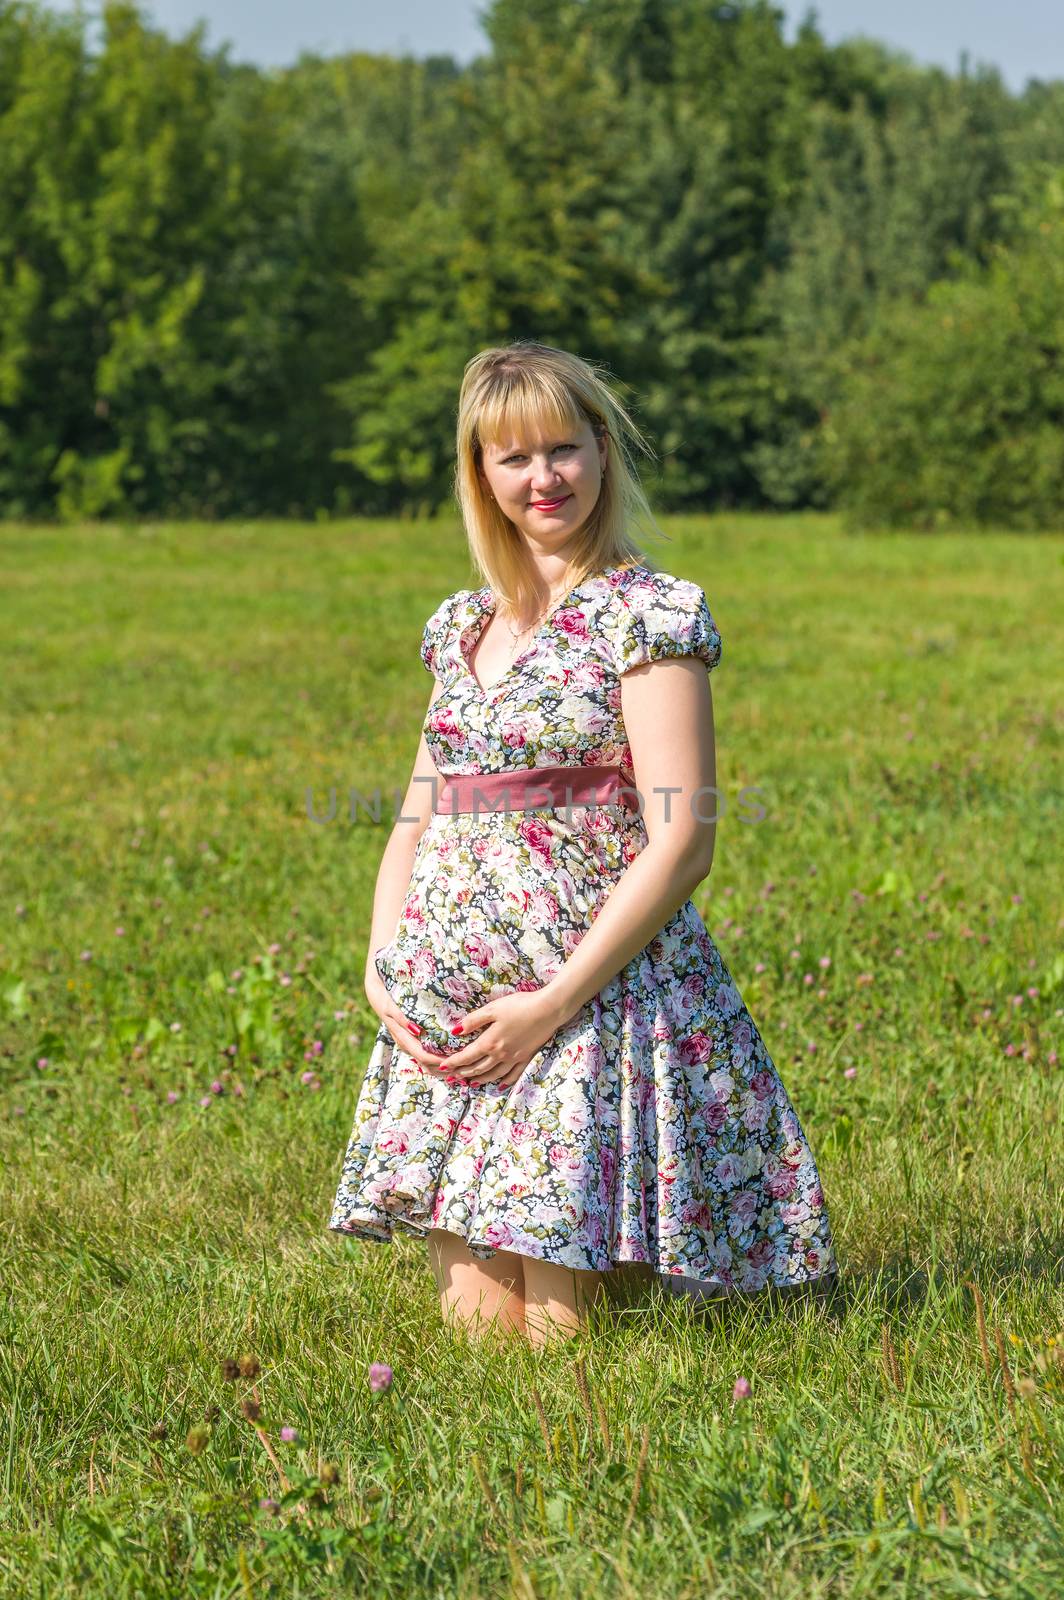 Expectant mother in the Park by kromeshnik